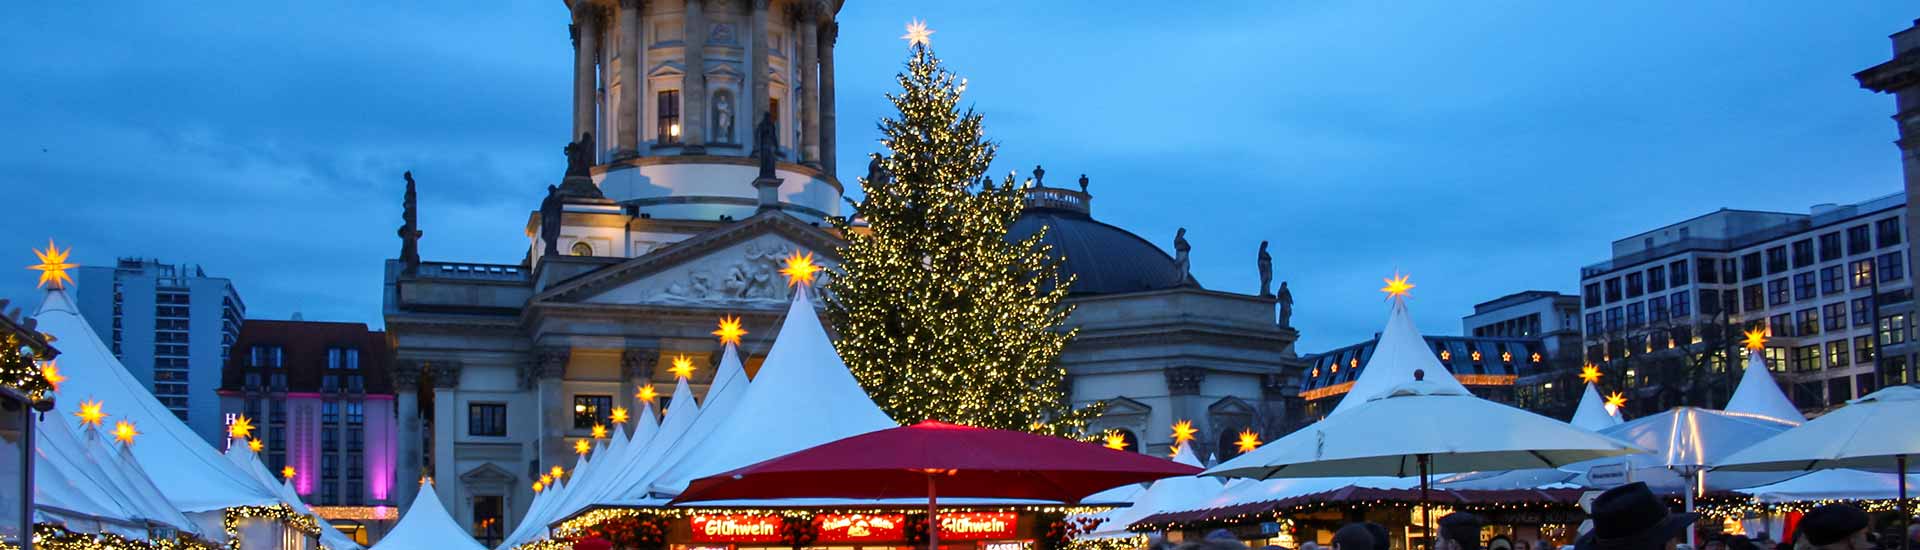 best christmas markets berlin